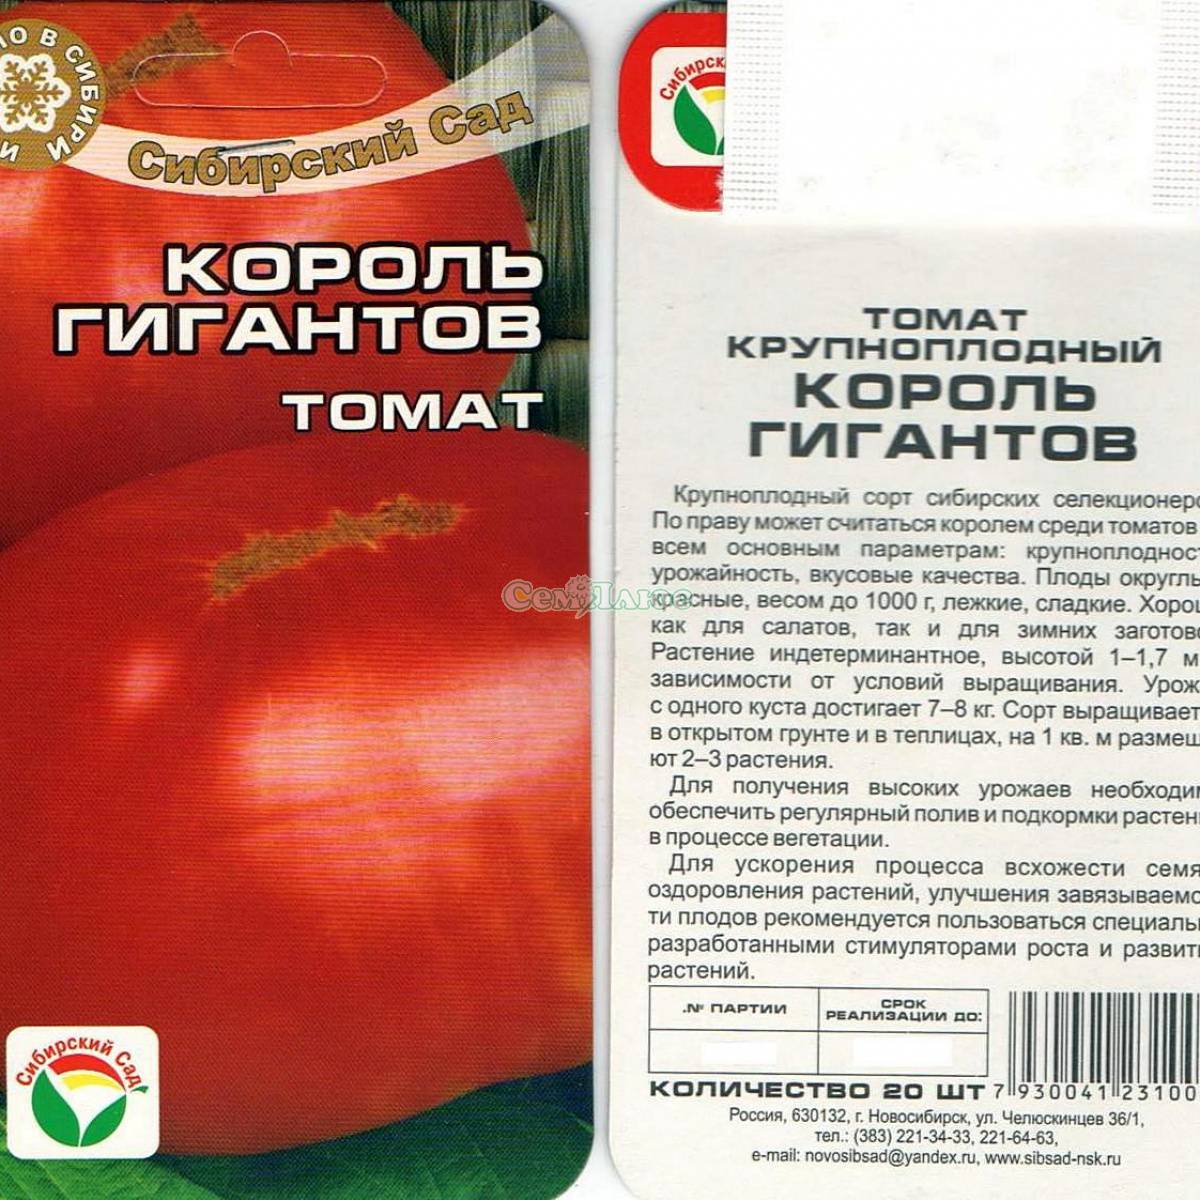 Томат "король лондон": описание и характеристики сорта, рекомендации по выращиванию урожая помидор, фото-материалы